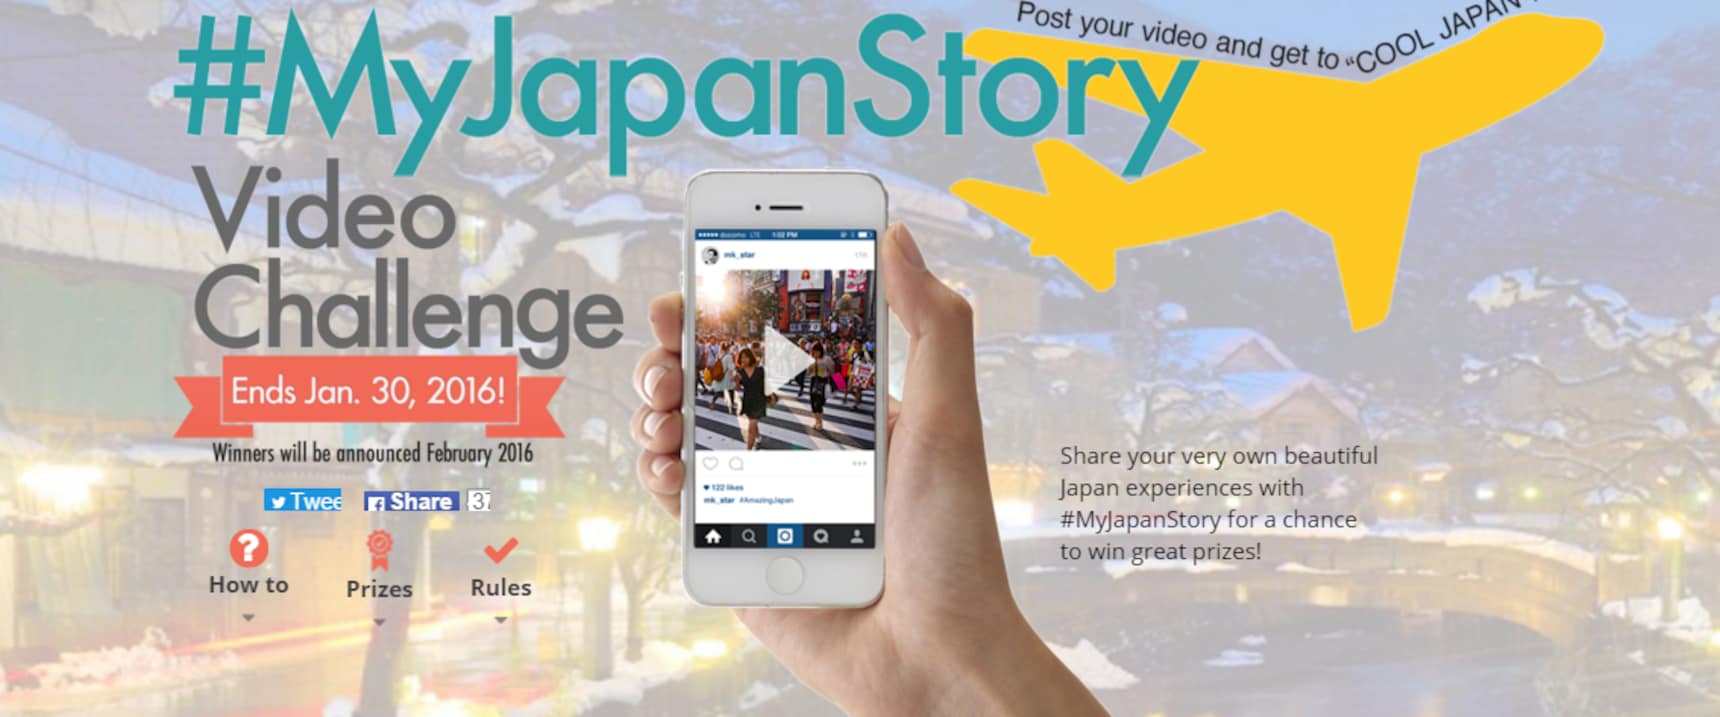 发送您的视频，重新游览日本！